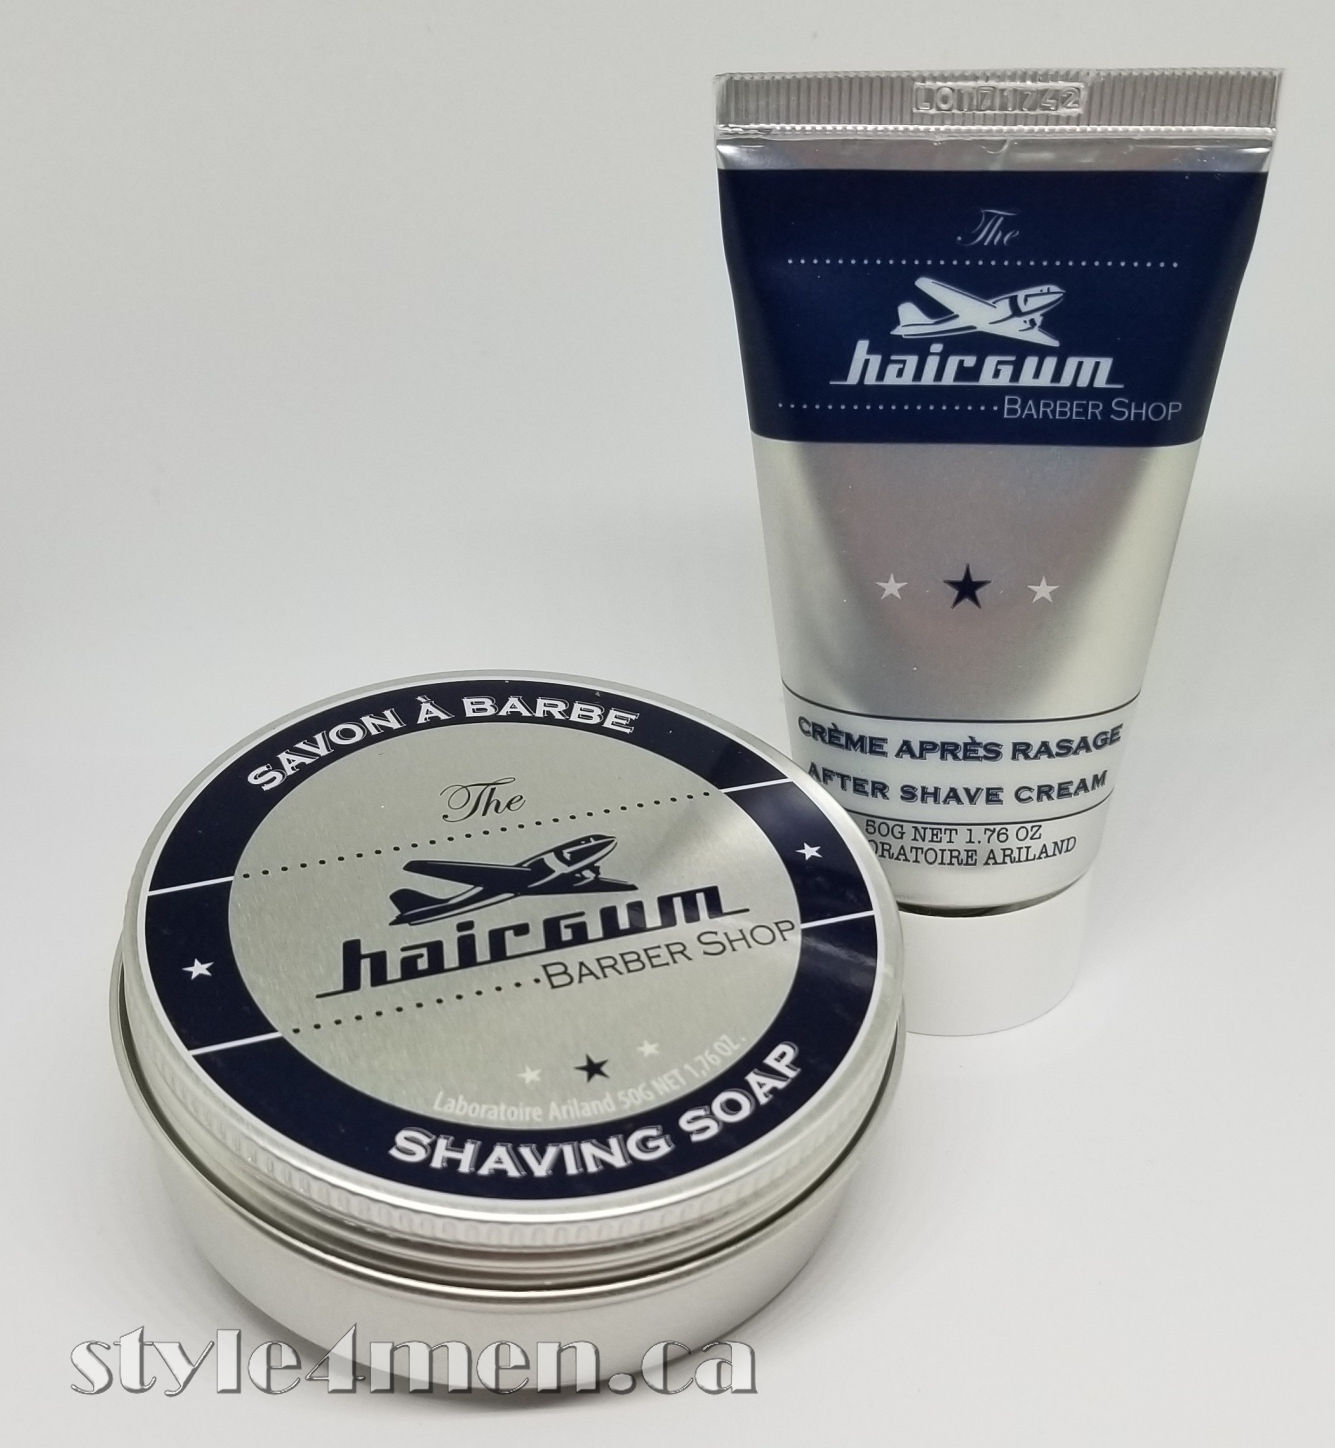 Hairgum Barber Shop – Shaving Soap and After Shave Smoothness